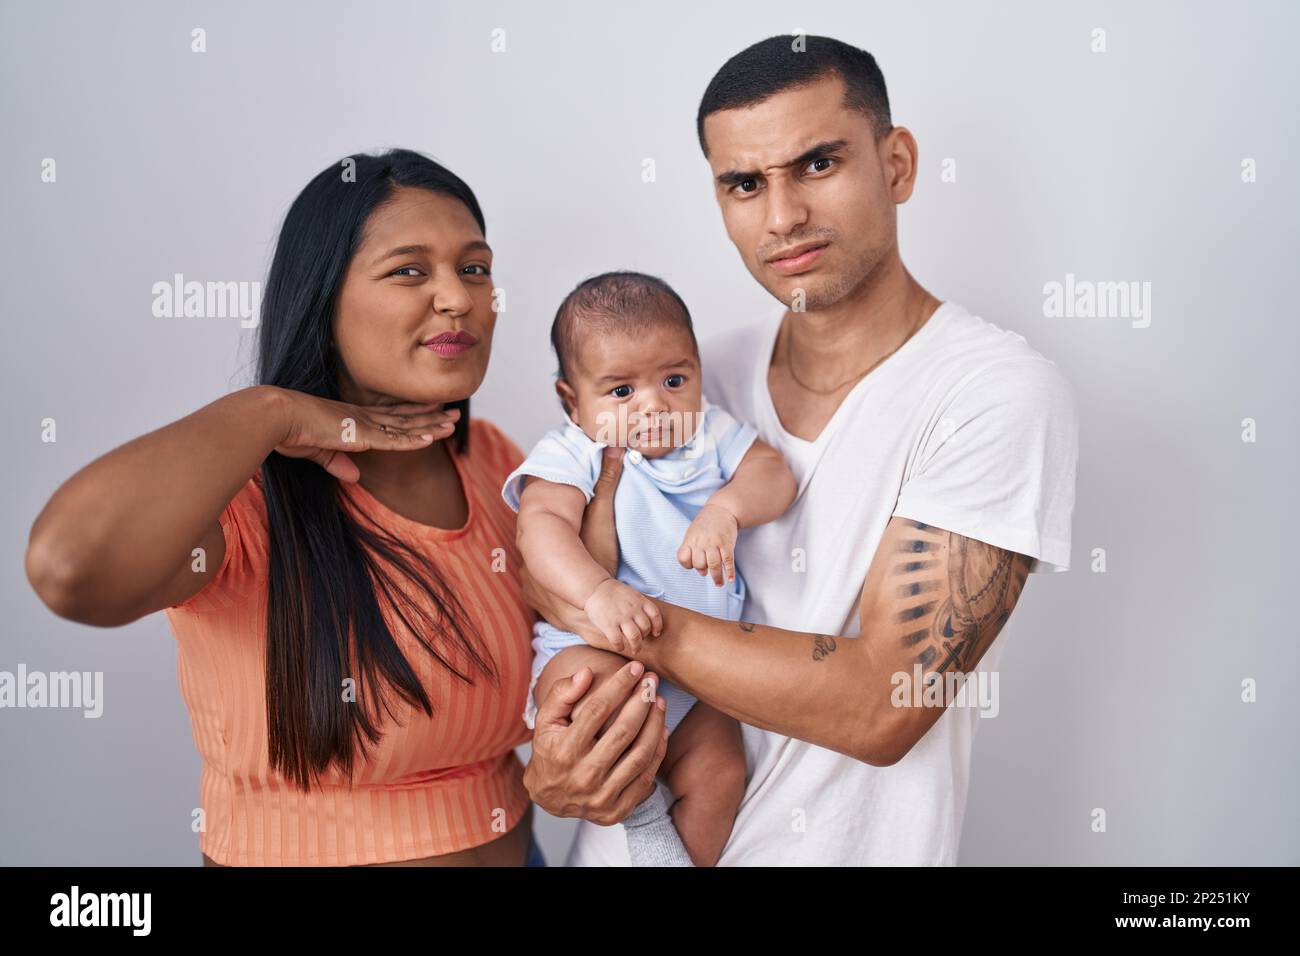 Ein junges lateinamerikanisches Paar mit einem Baby, das über einem isolierten Hintergrund steht und mit der Hand als Messer die Kehle durchschneidet, droht Aggression mit wütender Geige Stockfoto